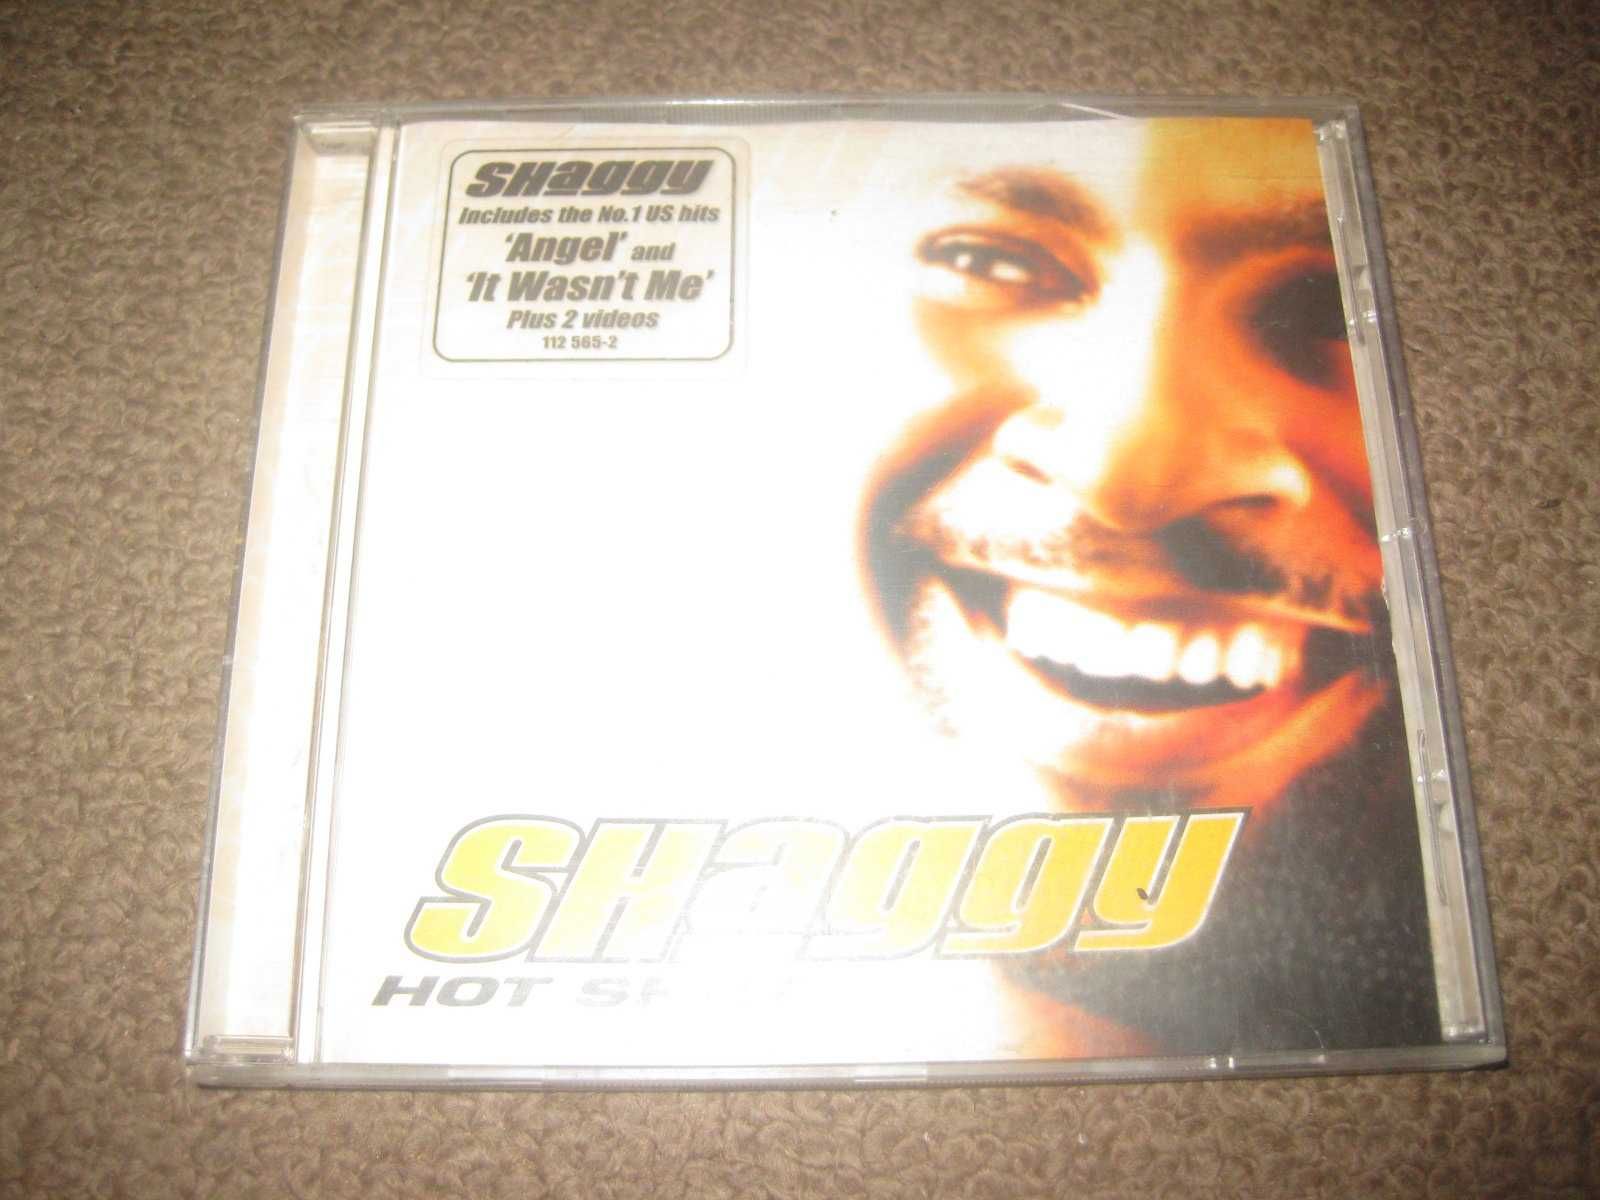 CD do Shaggy "Hot Shot" Portes Grátis!